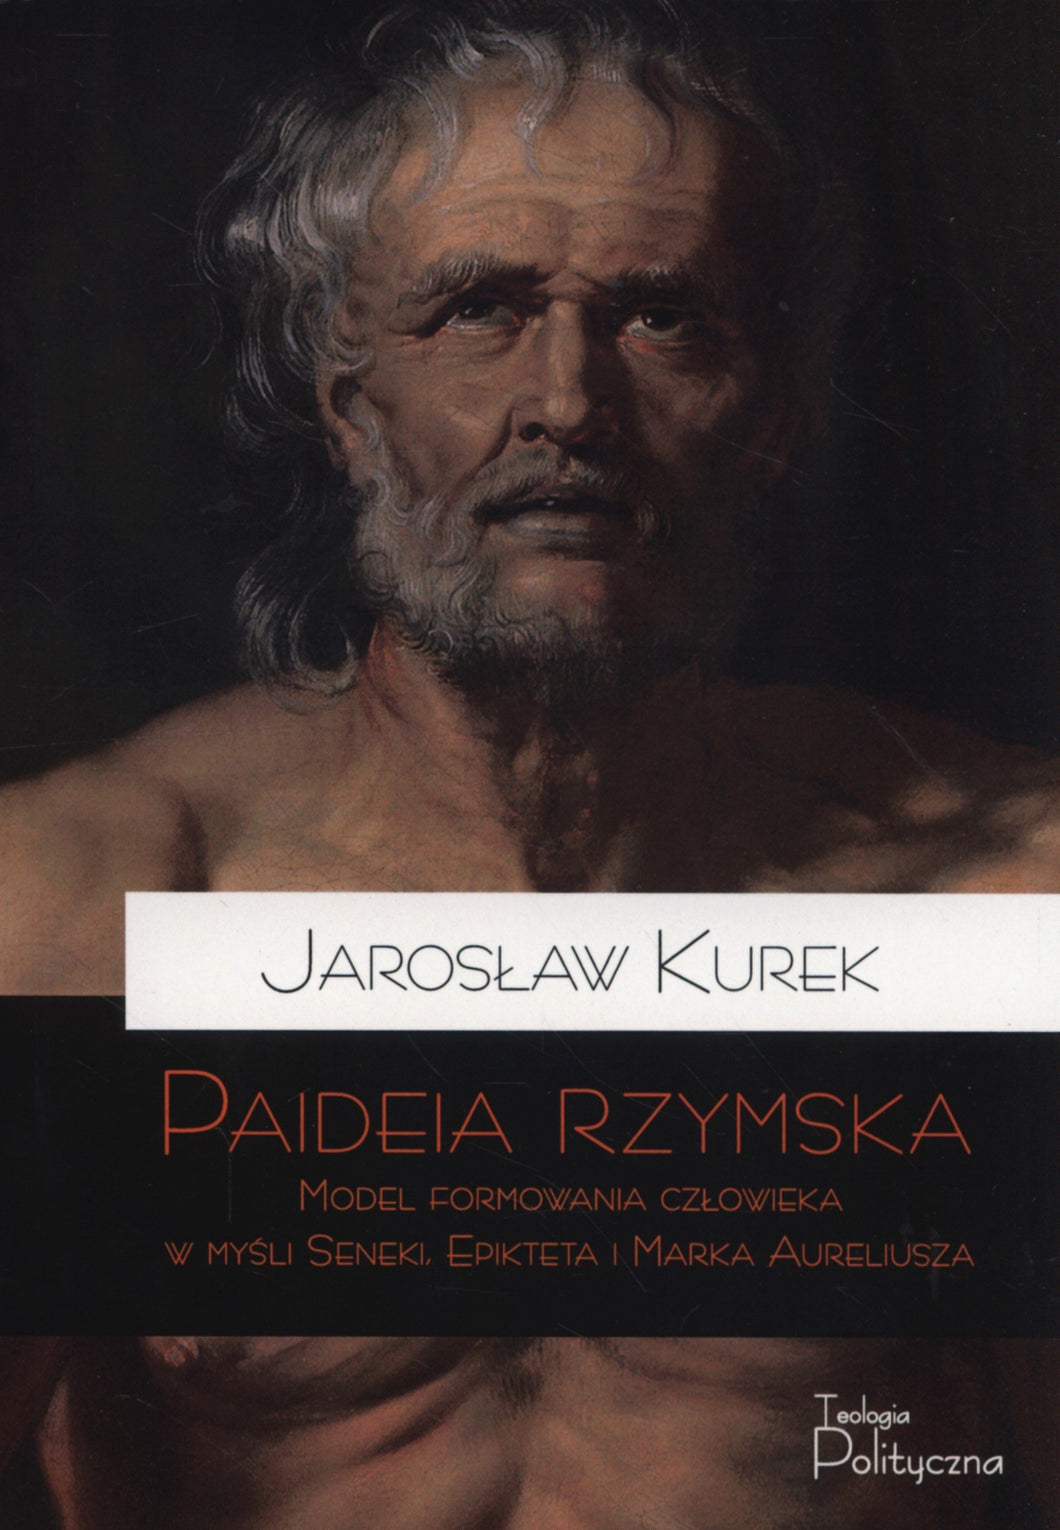 Paideia Rzymska / Roman Paideia (in Polish)